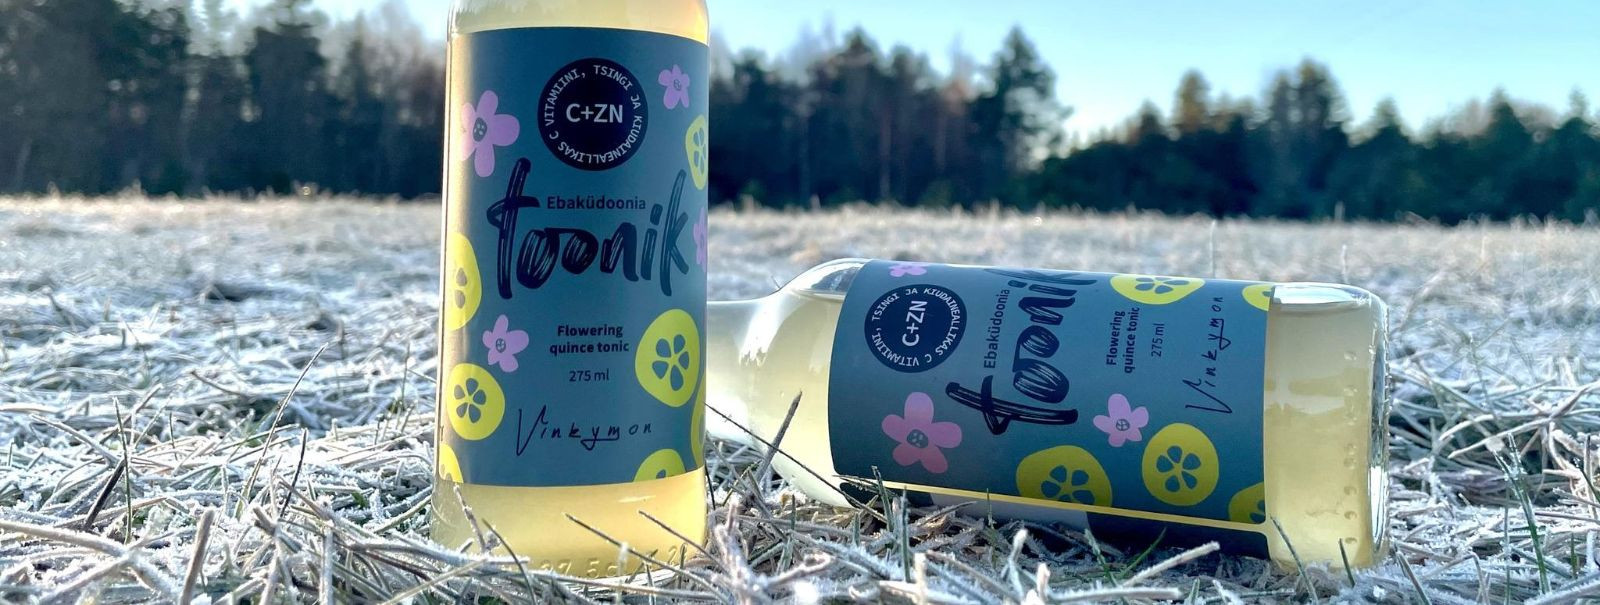 Vinkymon OÜ tutvustab uhkusega oma eksklusiivset limonaadivalikut, mis on loodud tõelistele maitseavastajatele. Oleme pühendunud pakkuma ainulaadseid ja tervisl